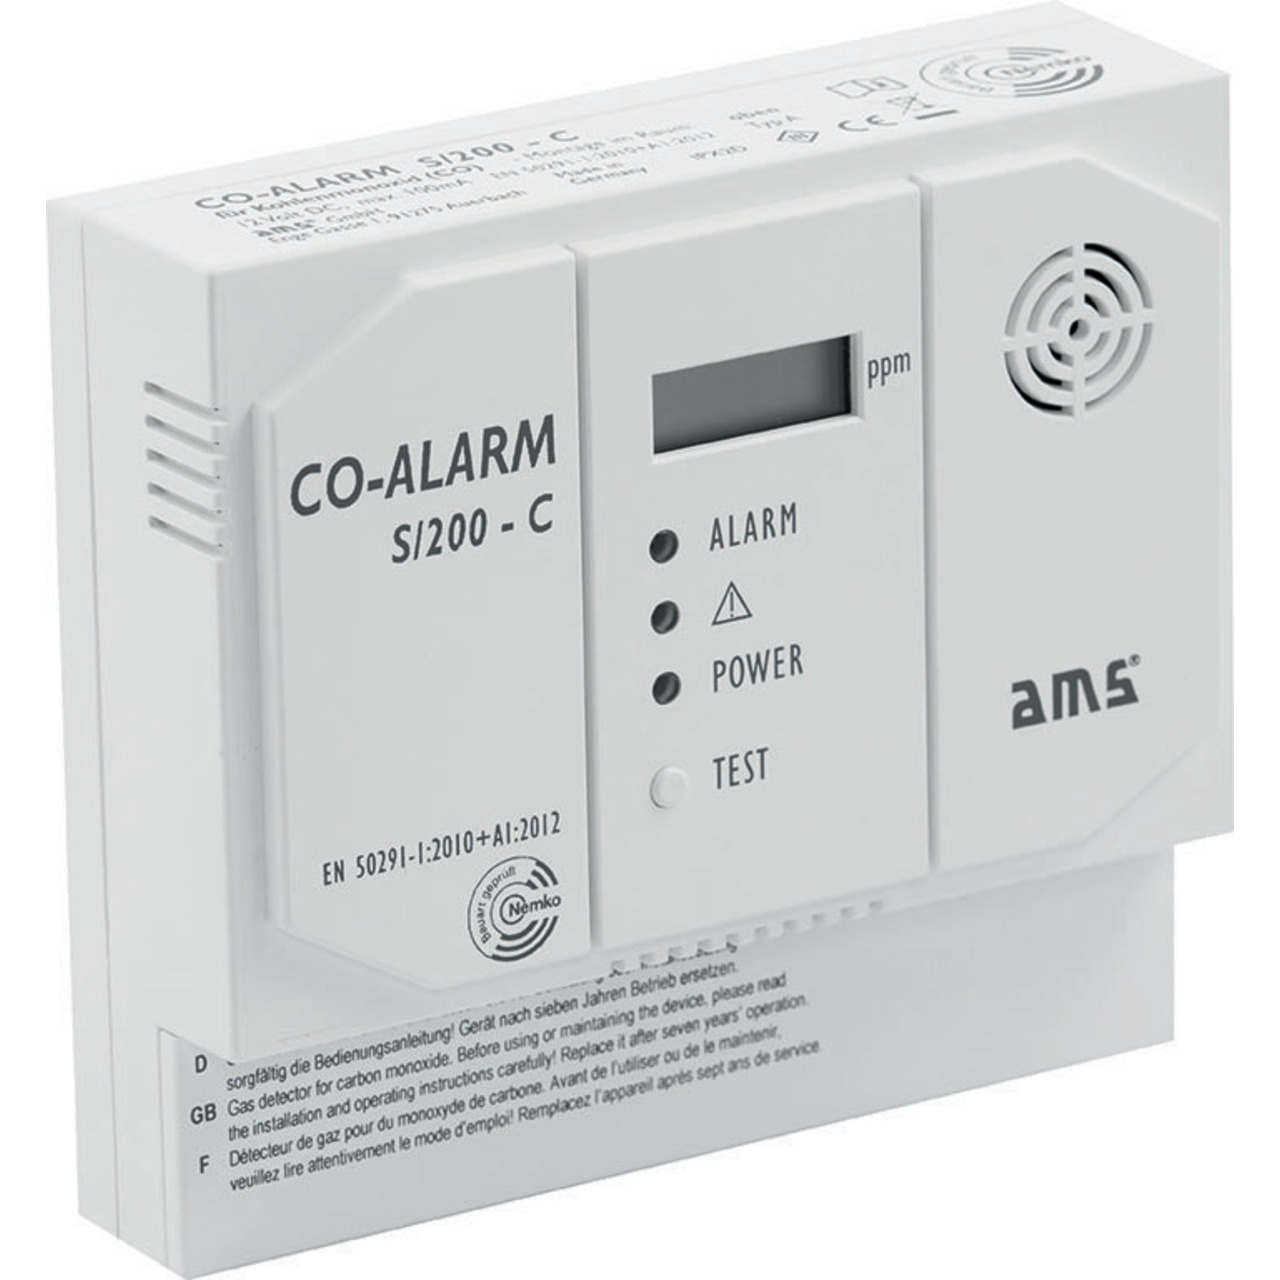 AMS Kohlenmonoxid-Warnmelder S-200-C mit Schaltkontakt unter Sicherheitstechnik